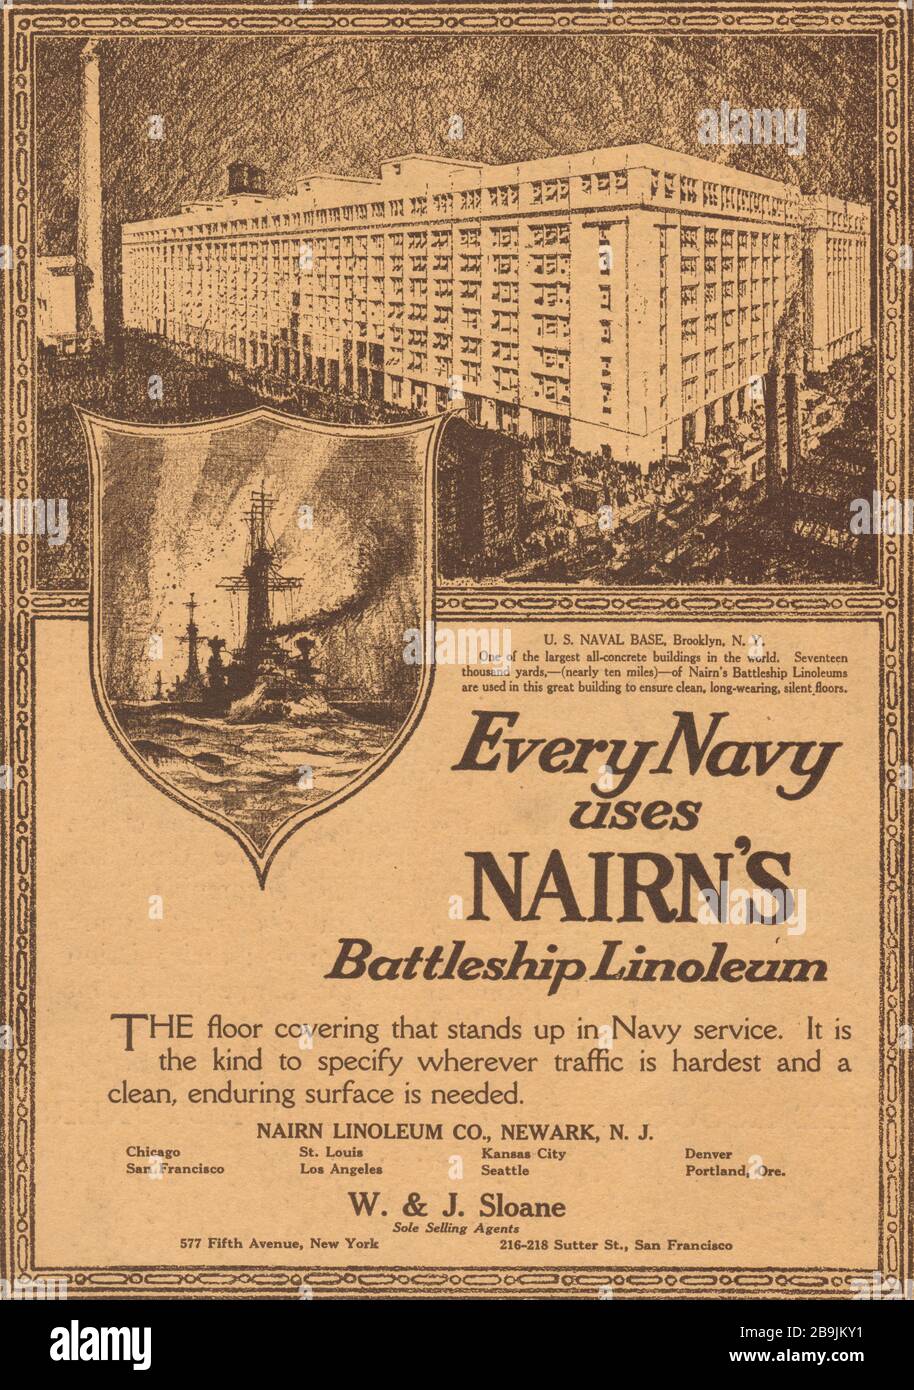 Ogni marina utilizza il linoleum della corazzata di Nairn. Base navale DEGLI STATI UNITI, Brooklyn, New York. Sloane, 577 Fifth Avenue, New York (1919) Foto Stock